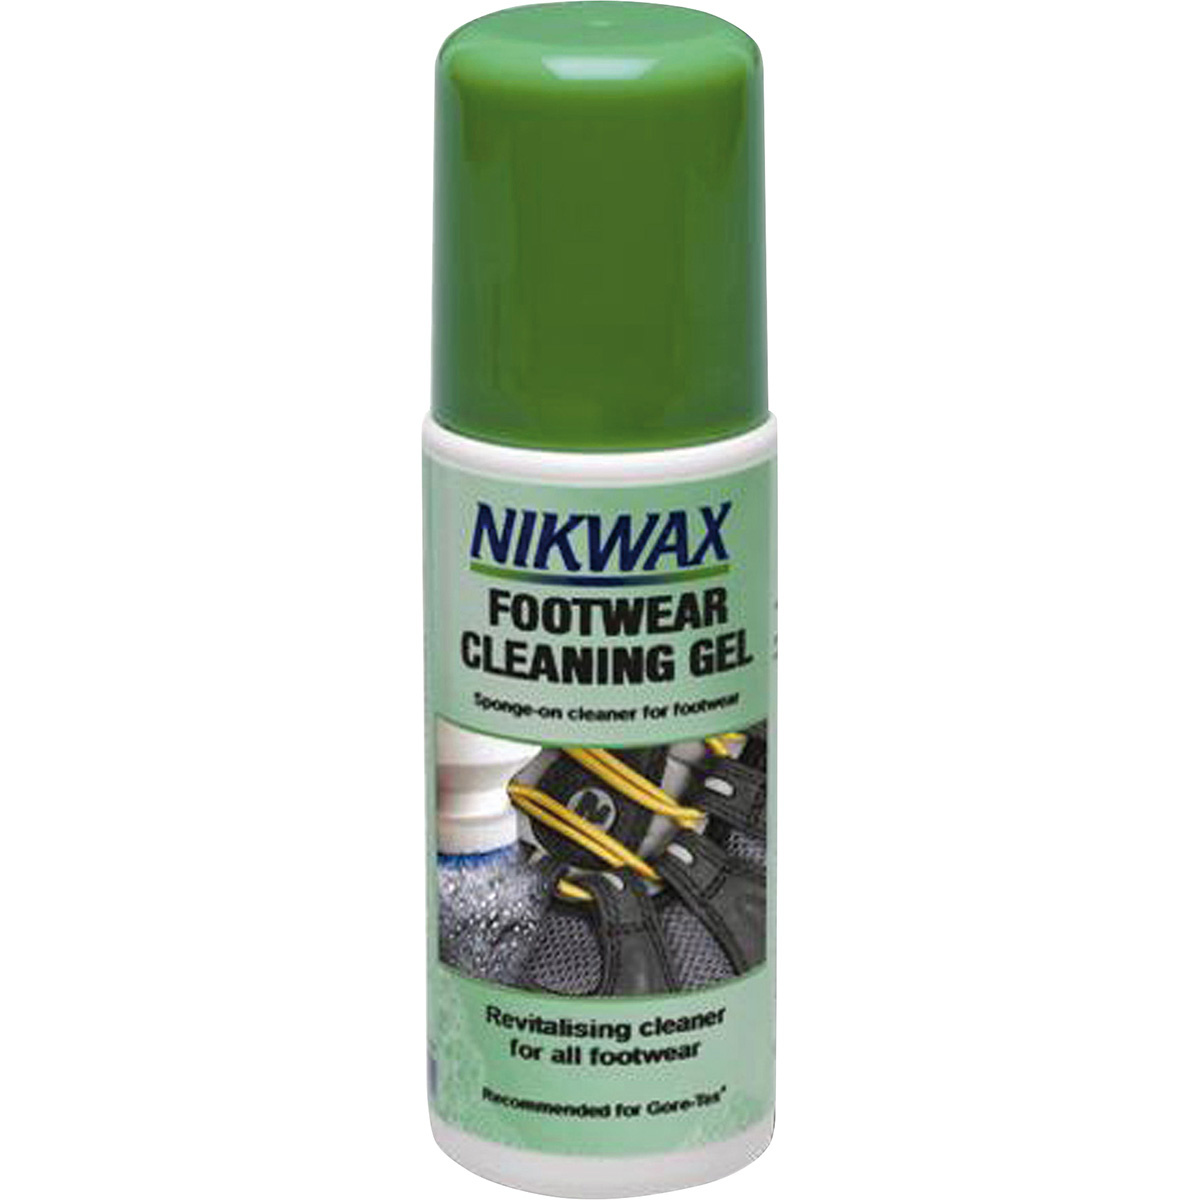 Image of Nikwax Footwear Cleaning Gel